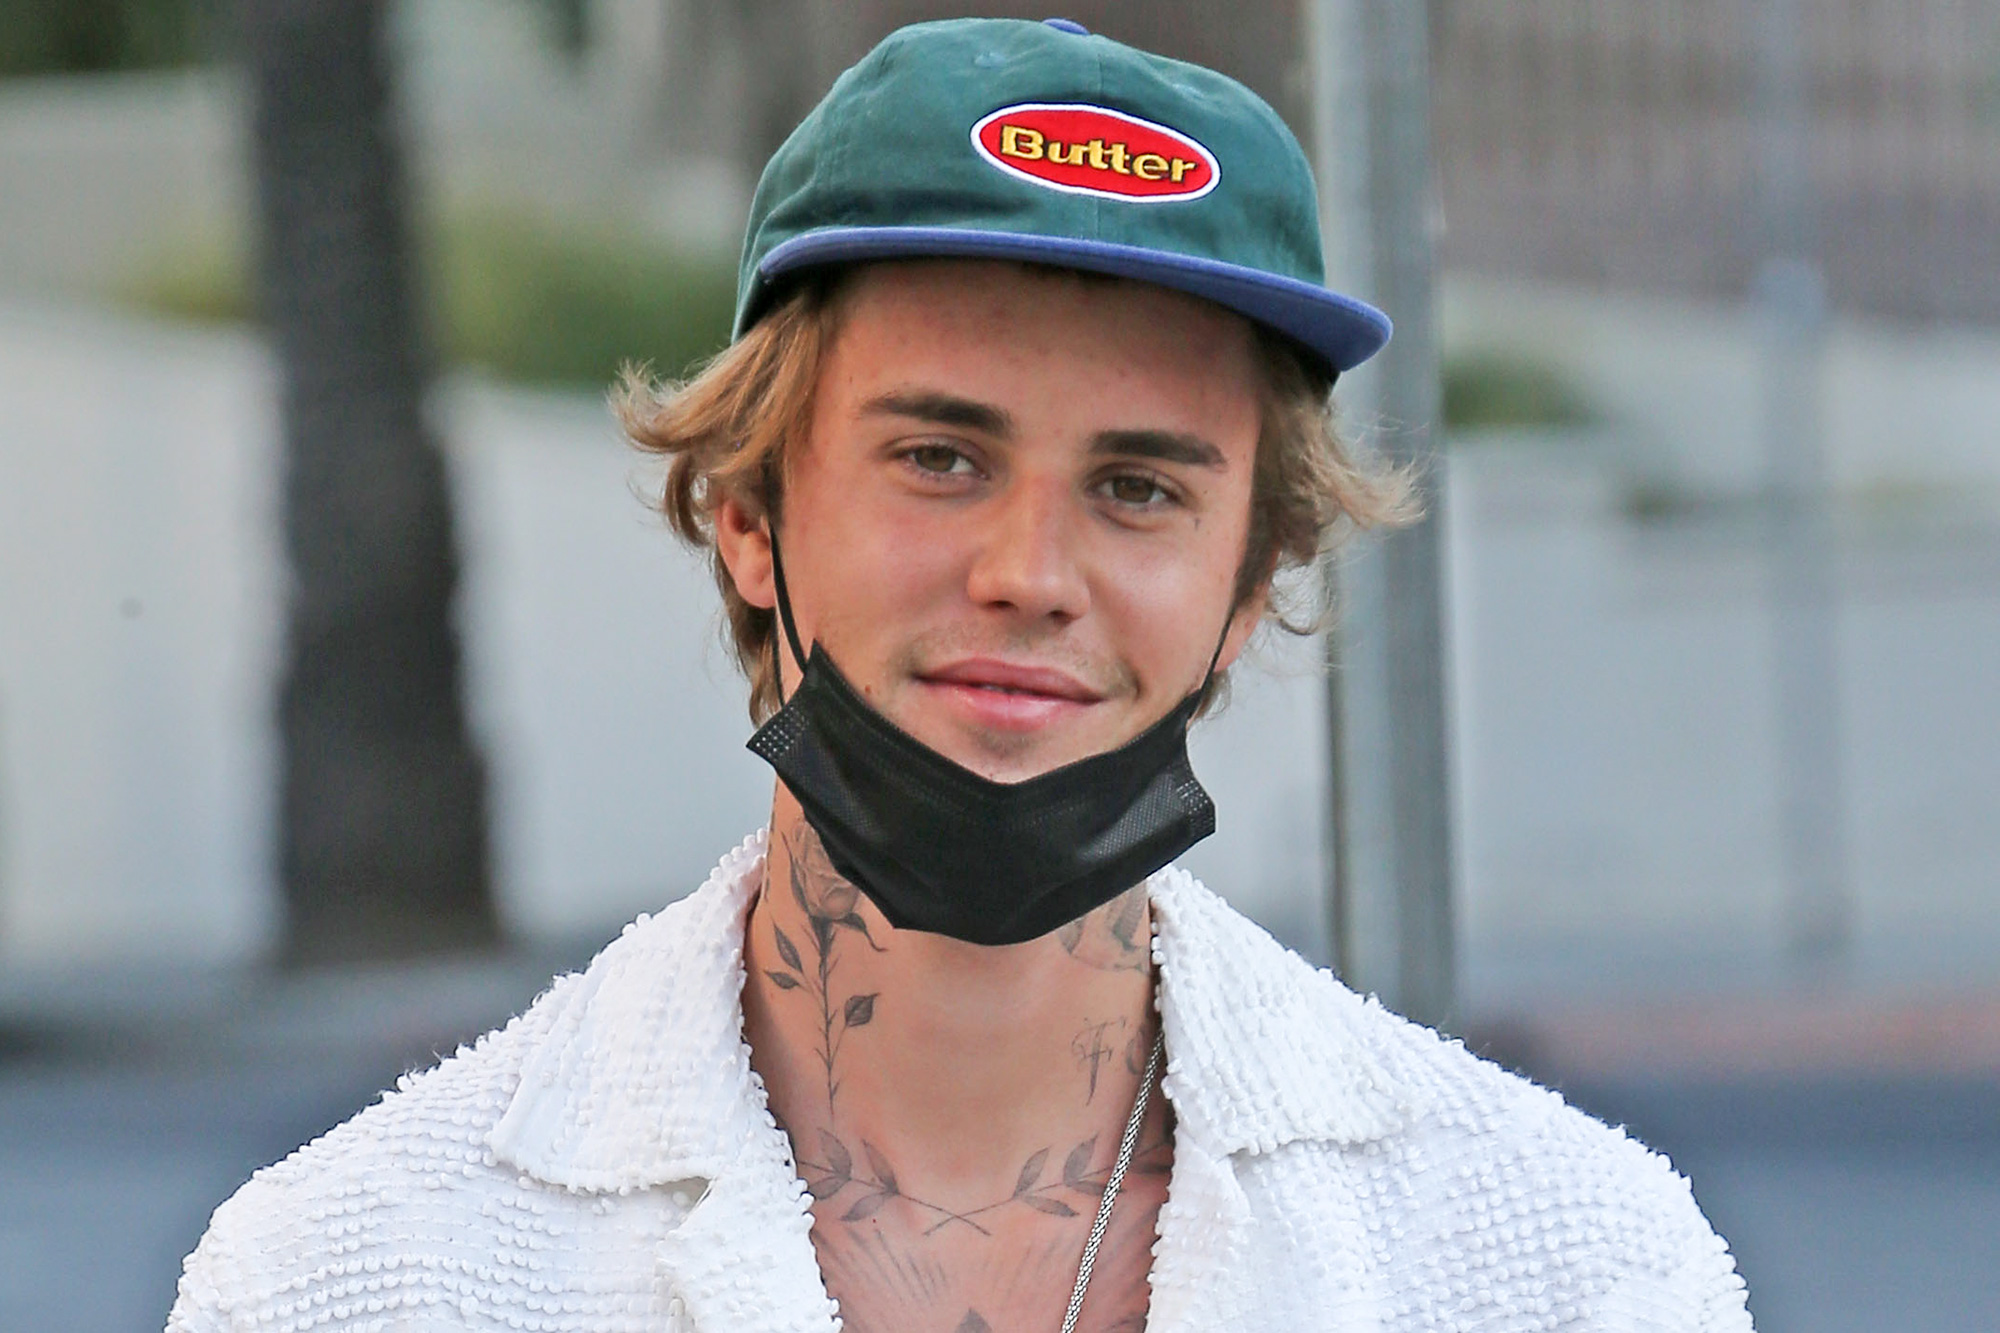 Justin Bieber Akan Merilis Album Baru “Justice”